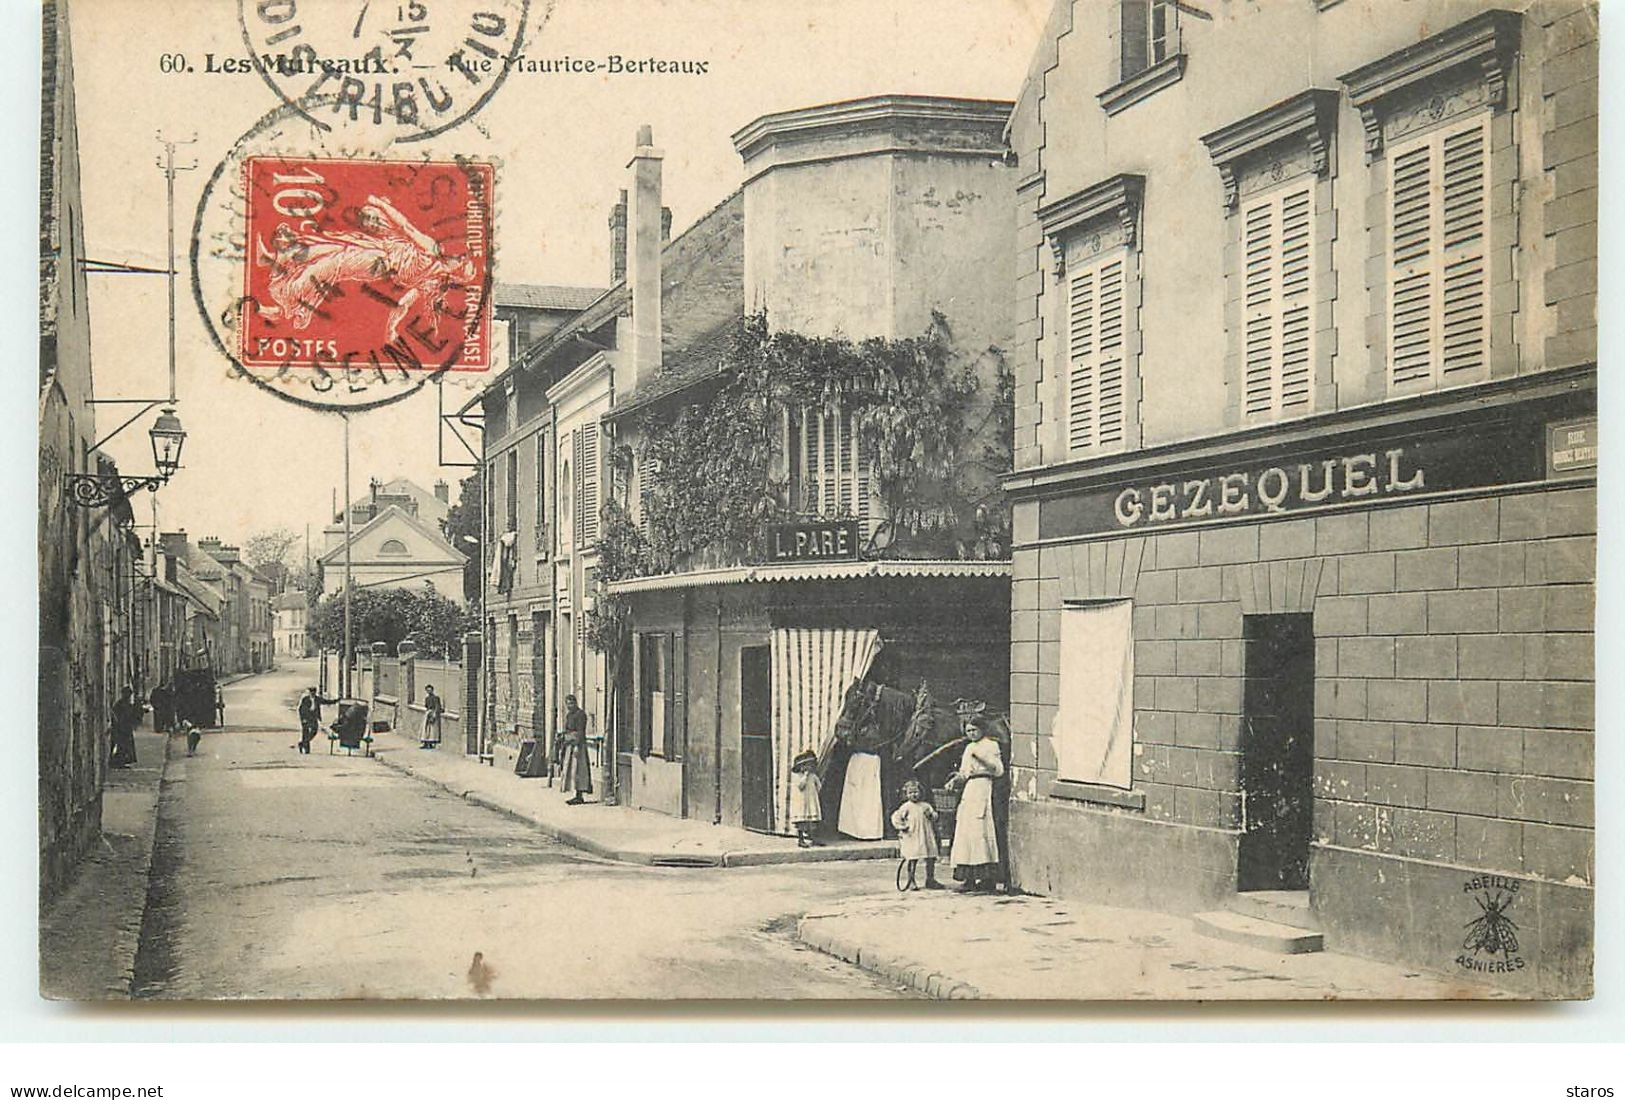 LES MUREAUX - Rue Maurice Berteaux - Gezequel, L. Paré - Les Mureaux